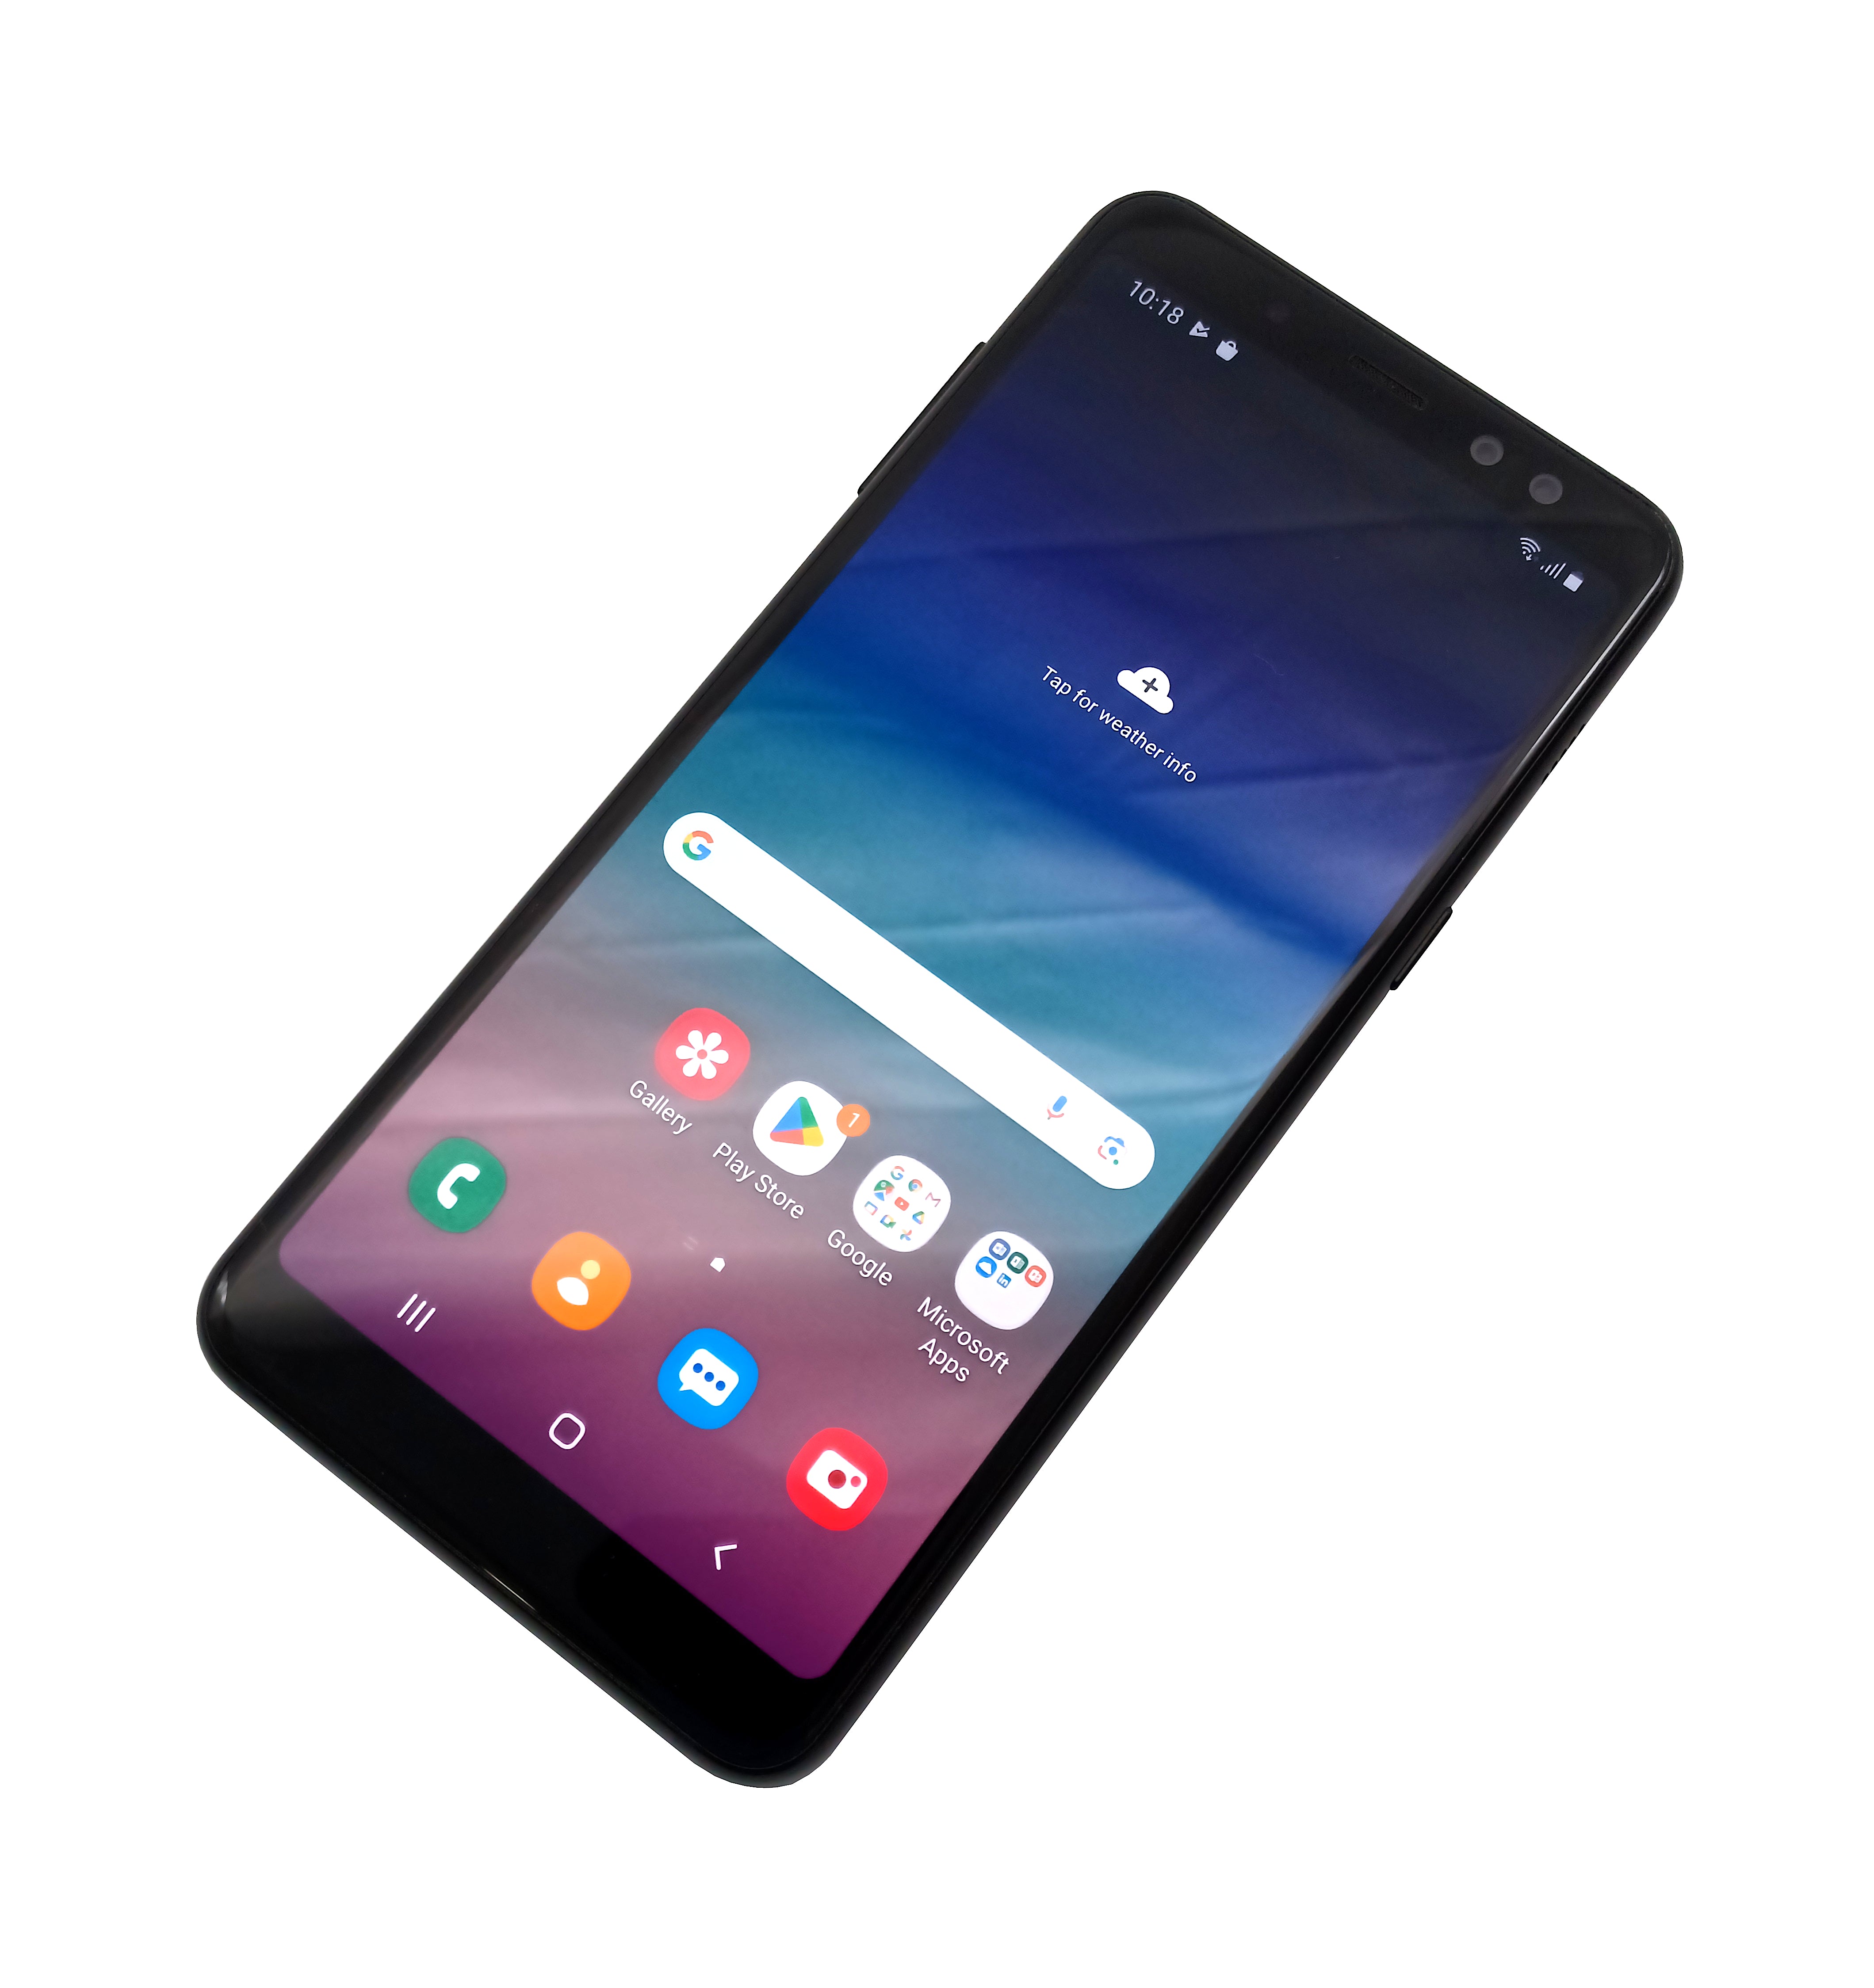 Samsung Galaxy A8 (2018) Smartphone. 32GB, Network Unlocked, Black, SM-A530F